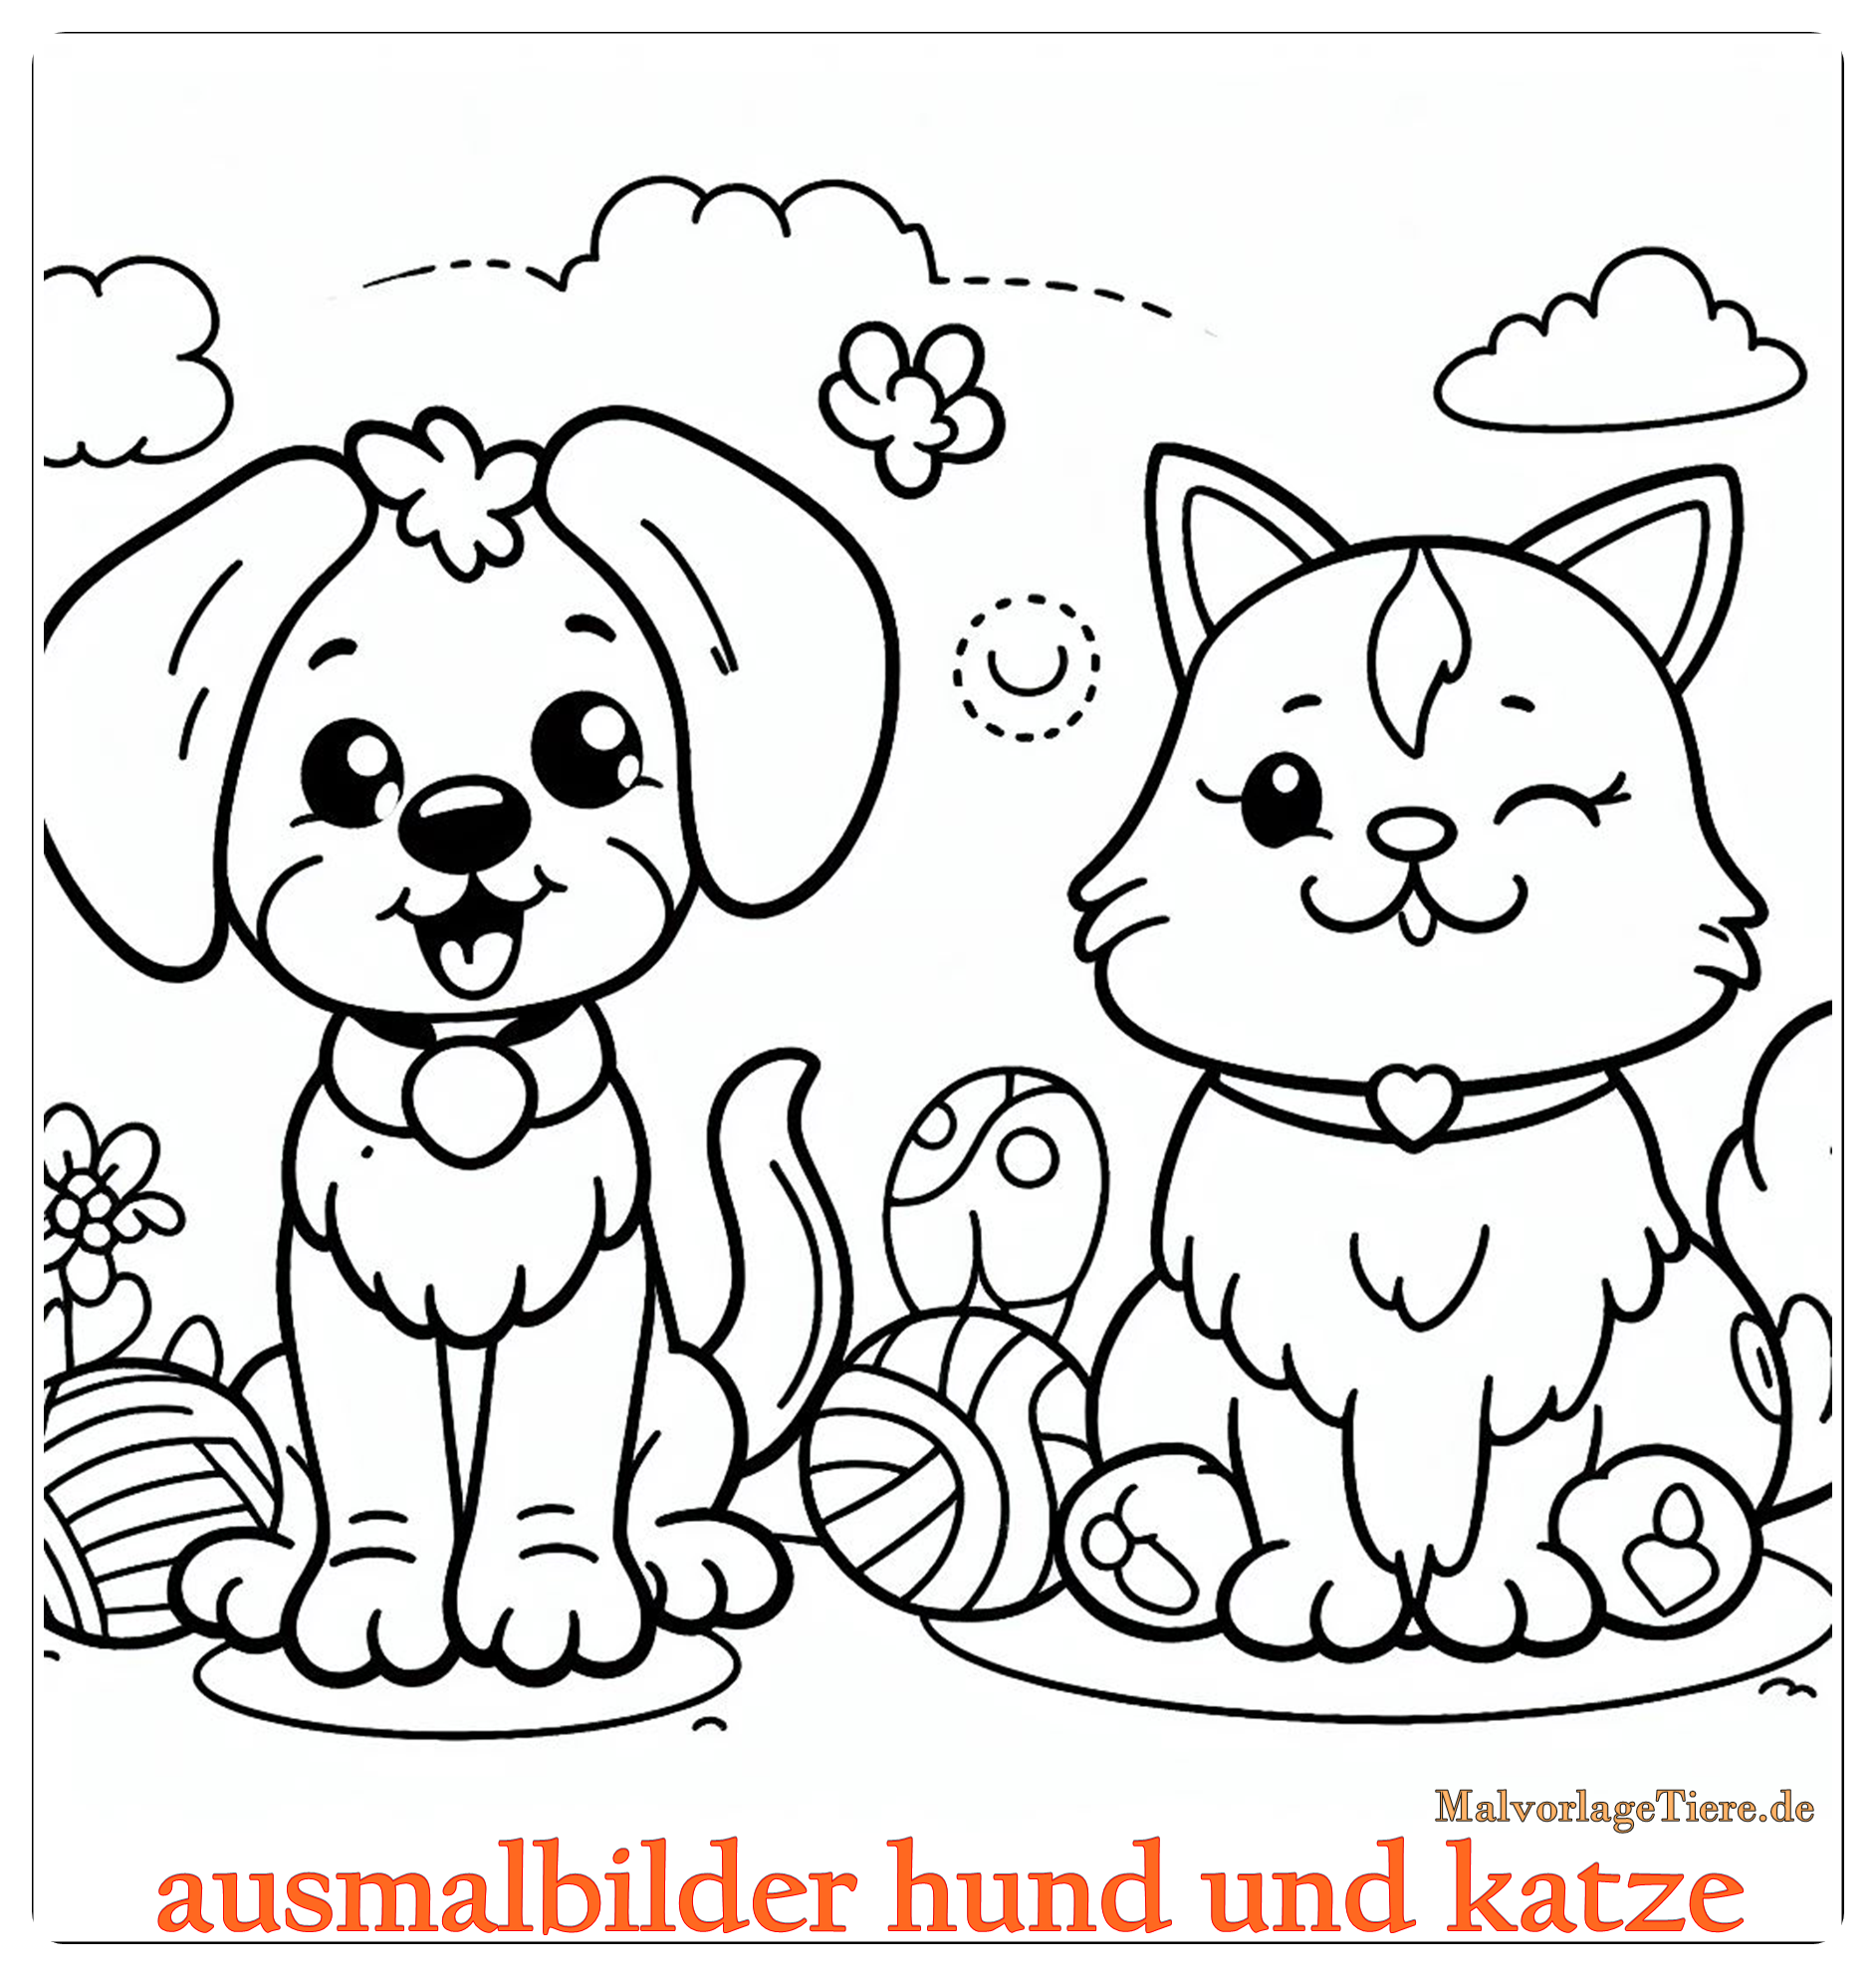 ausmalbilder hund und katze 01 by malvorlagetiere.de